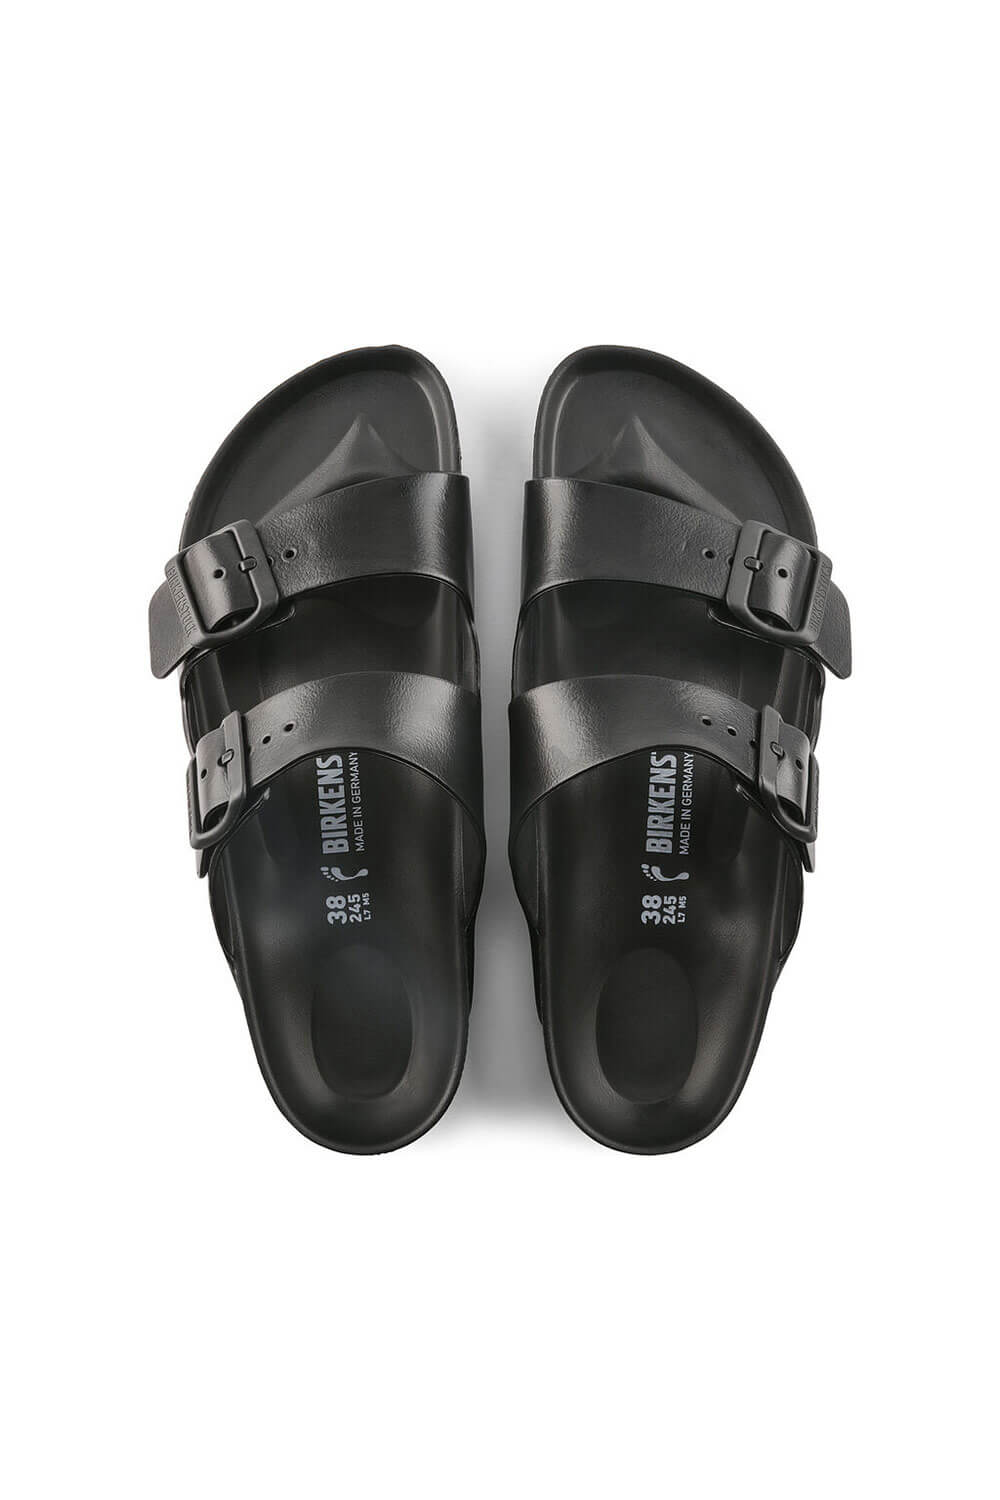 Victor stil Planet Birkenstock Arizona EVA Sandals for Women in Black | 129423 – Glik's